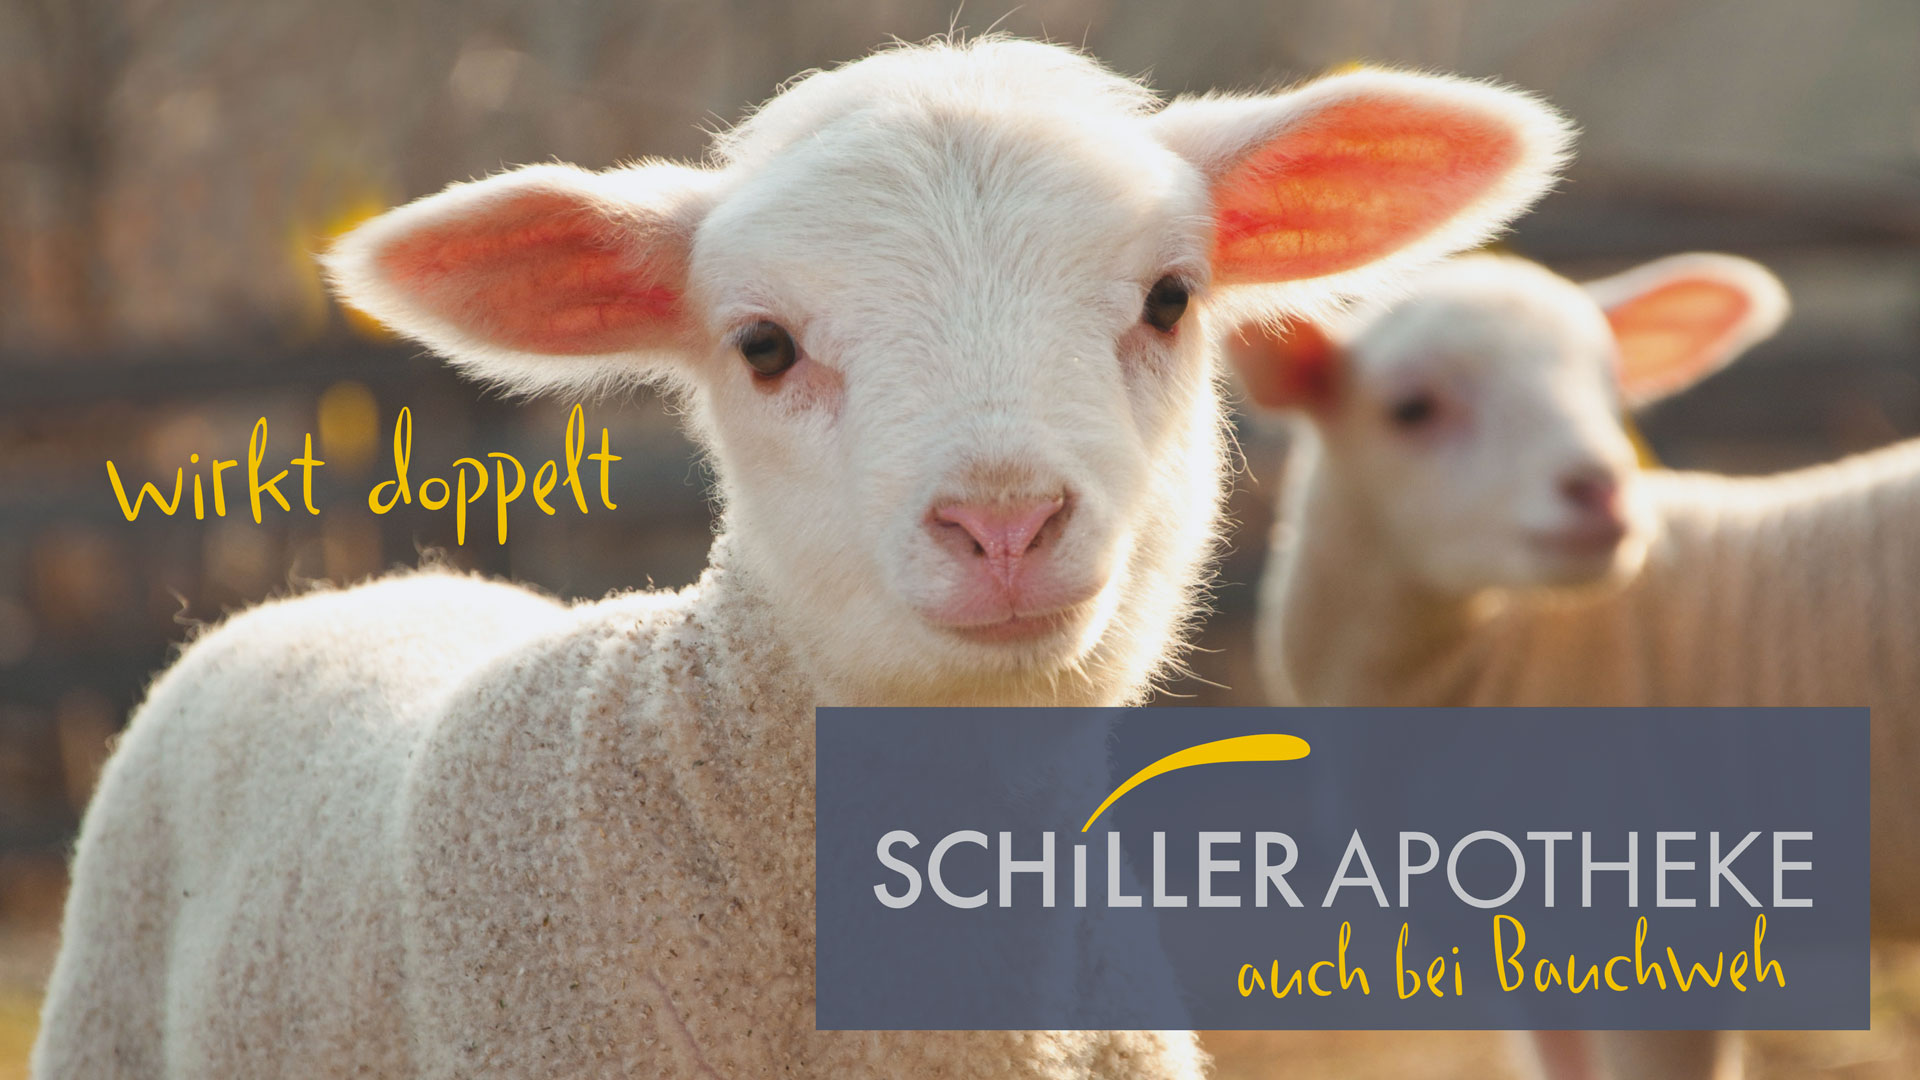 Zwei Ziegen auf der Weide mit dem Logo Schiller Apotheke wirkt doppelt auch bei Bauchweh